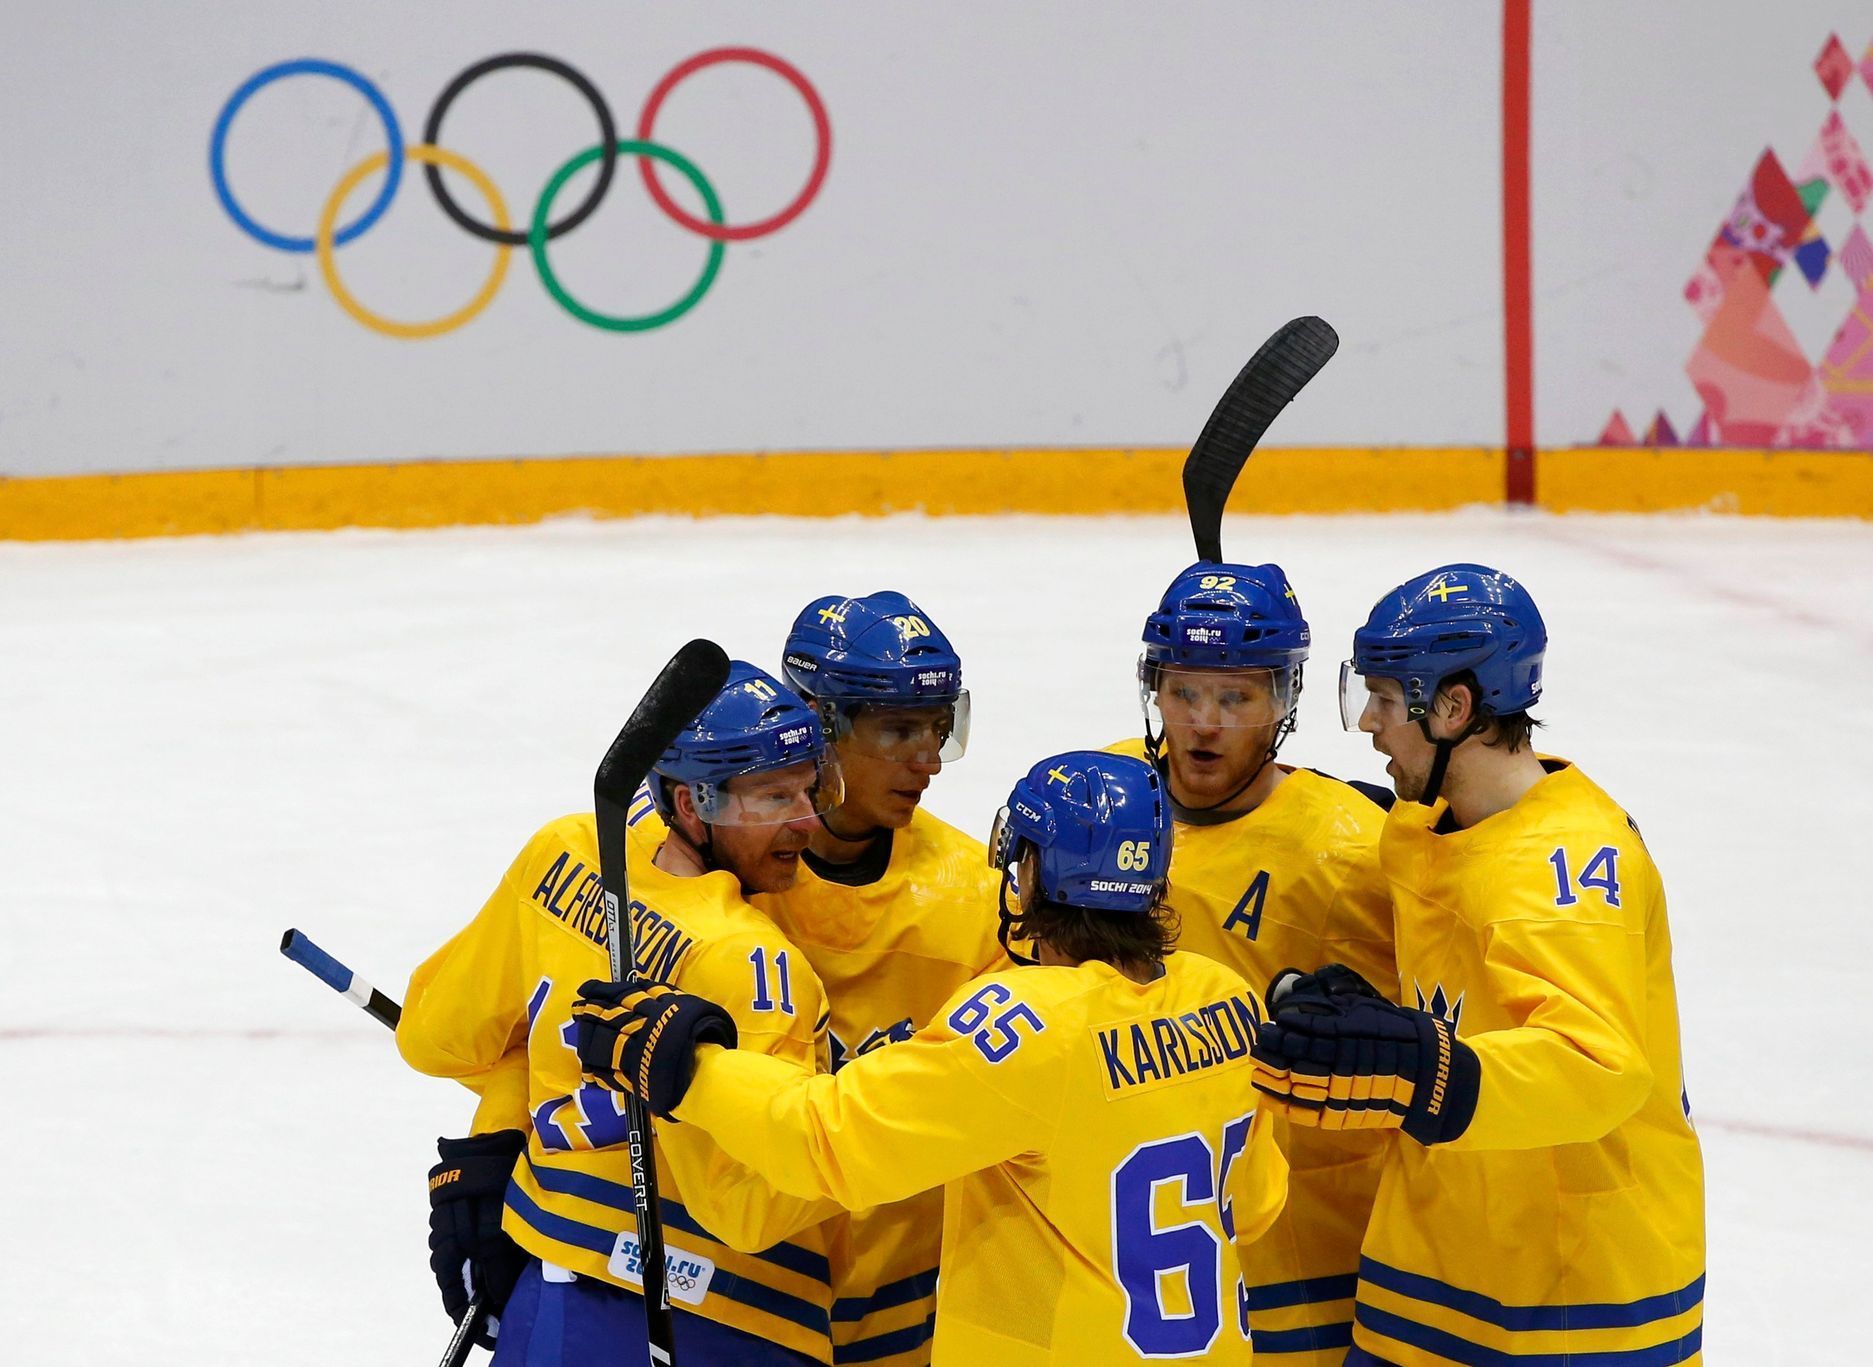 Soči 2014: Švédsko - Slovinsko (hokej, muži, čtvrtfinále 1)